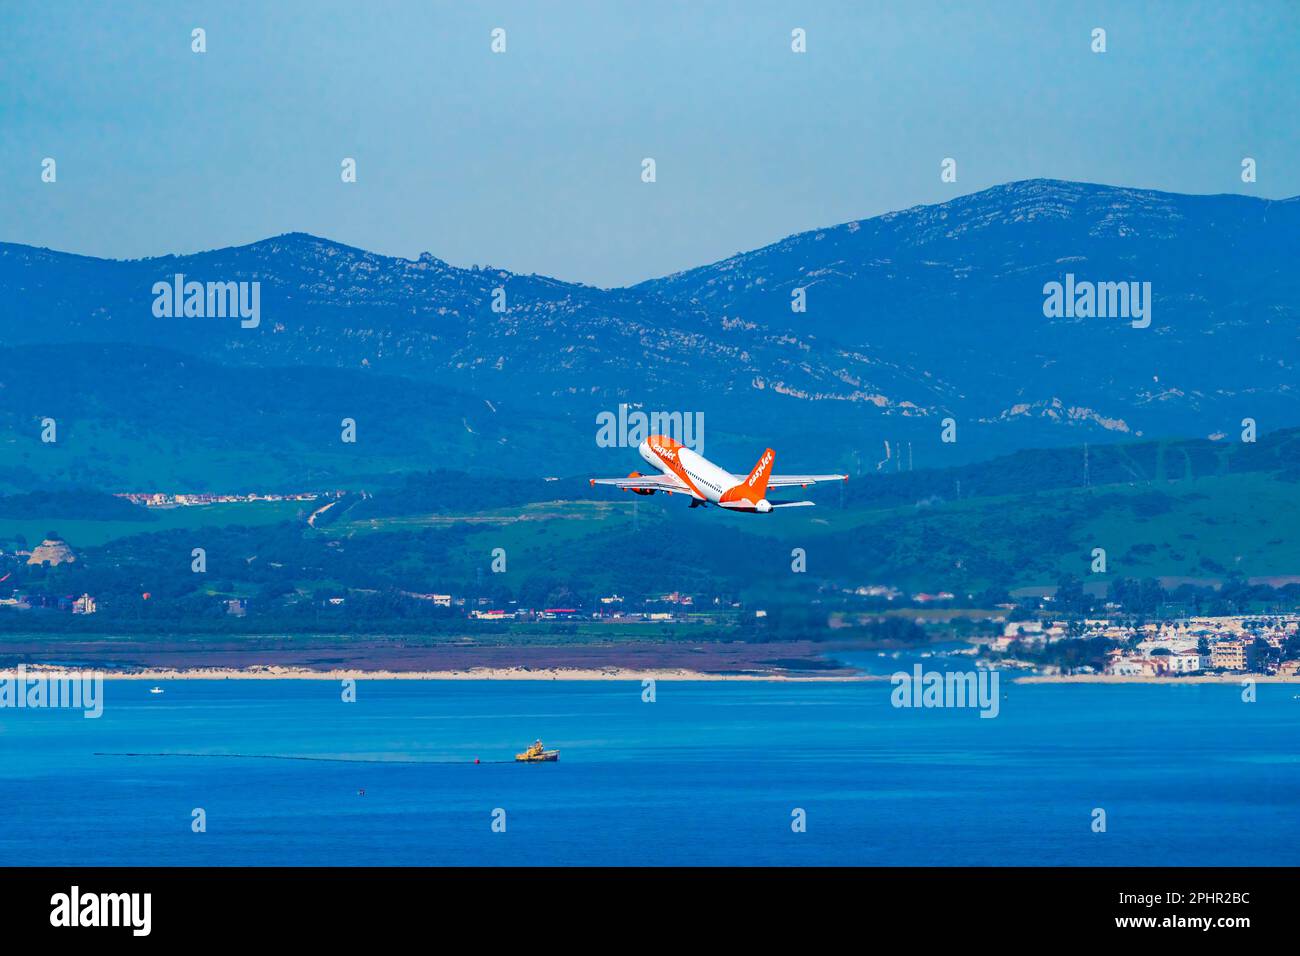 GIBRALTAR, Royaume-Uni - 12 MARS 2023 : l'avion easyJet survole la mer après avoir pris son départ de l'aéroport international de Gibraltar. Banque D'Images